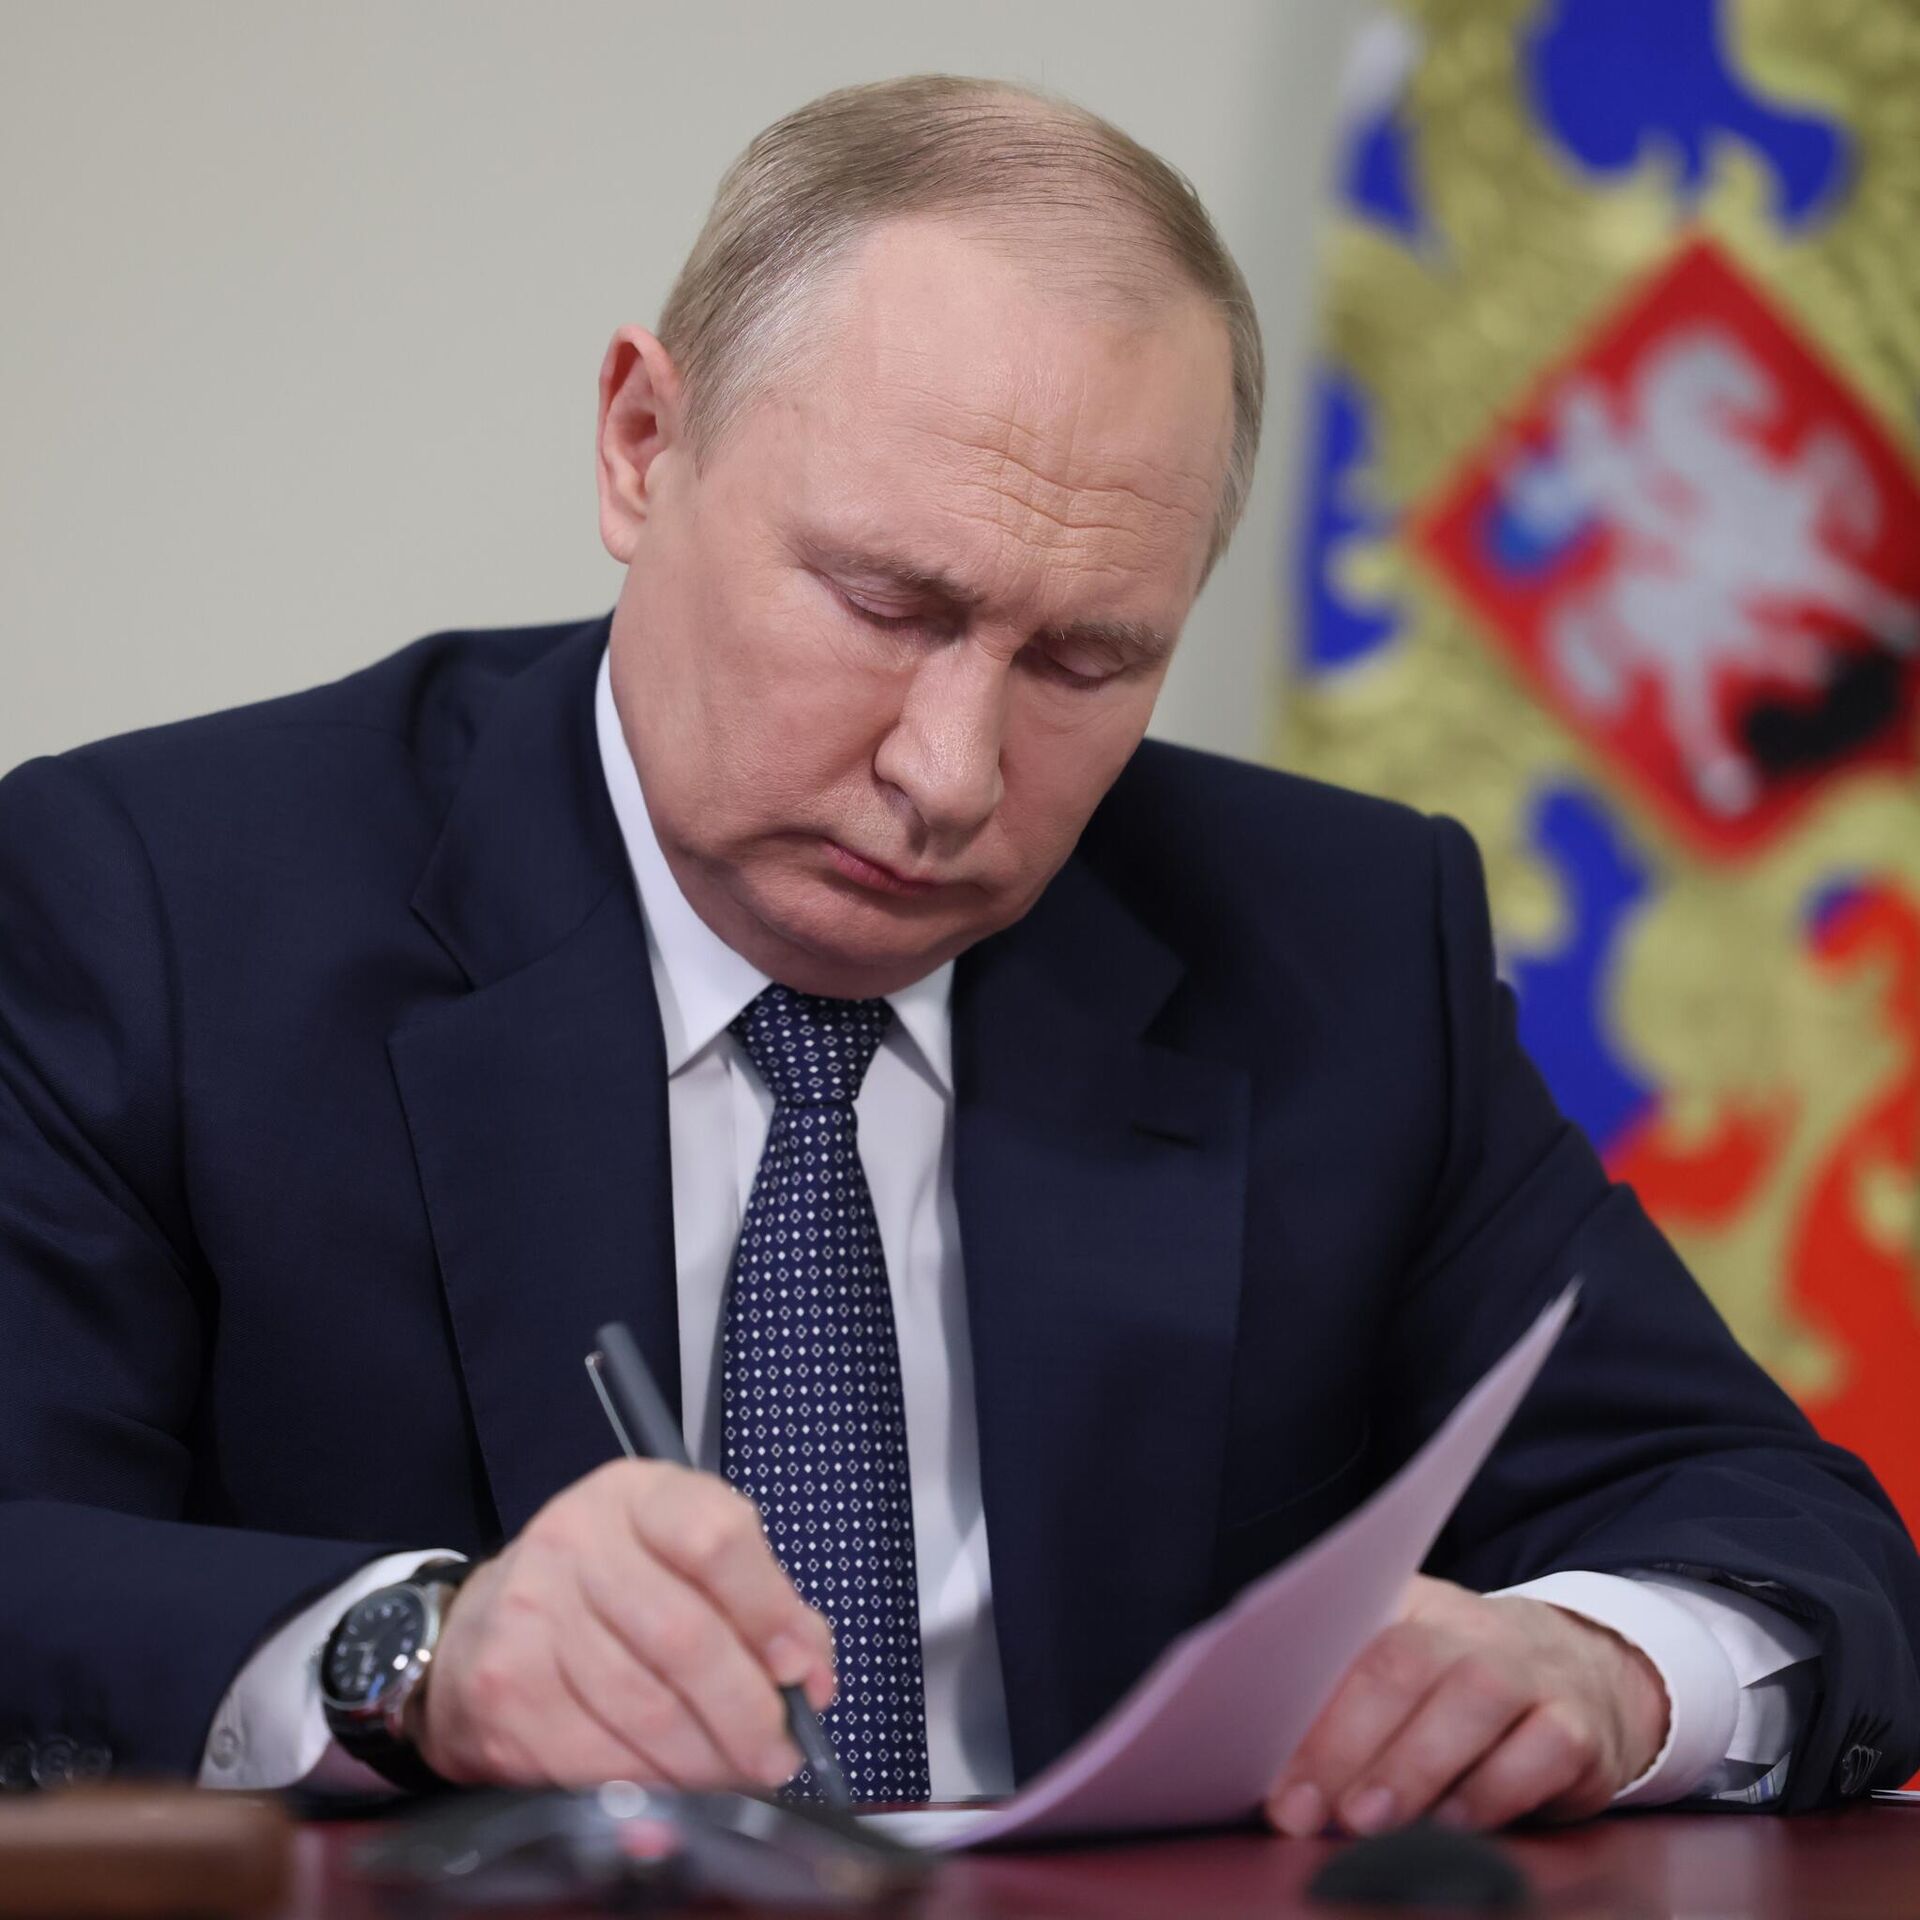 Песков: Путин и Киссинджер вели очень глубокие разговоры об РФ и США, о будущем